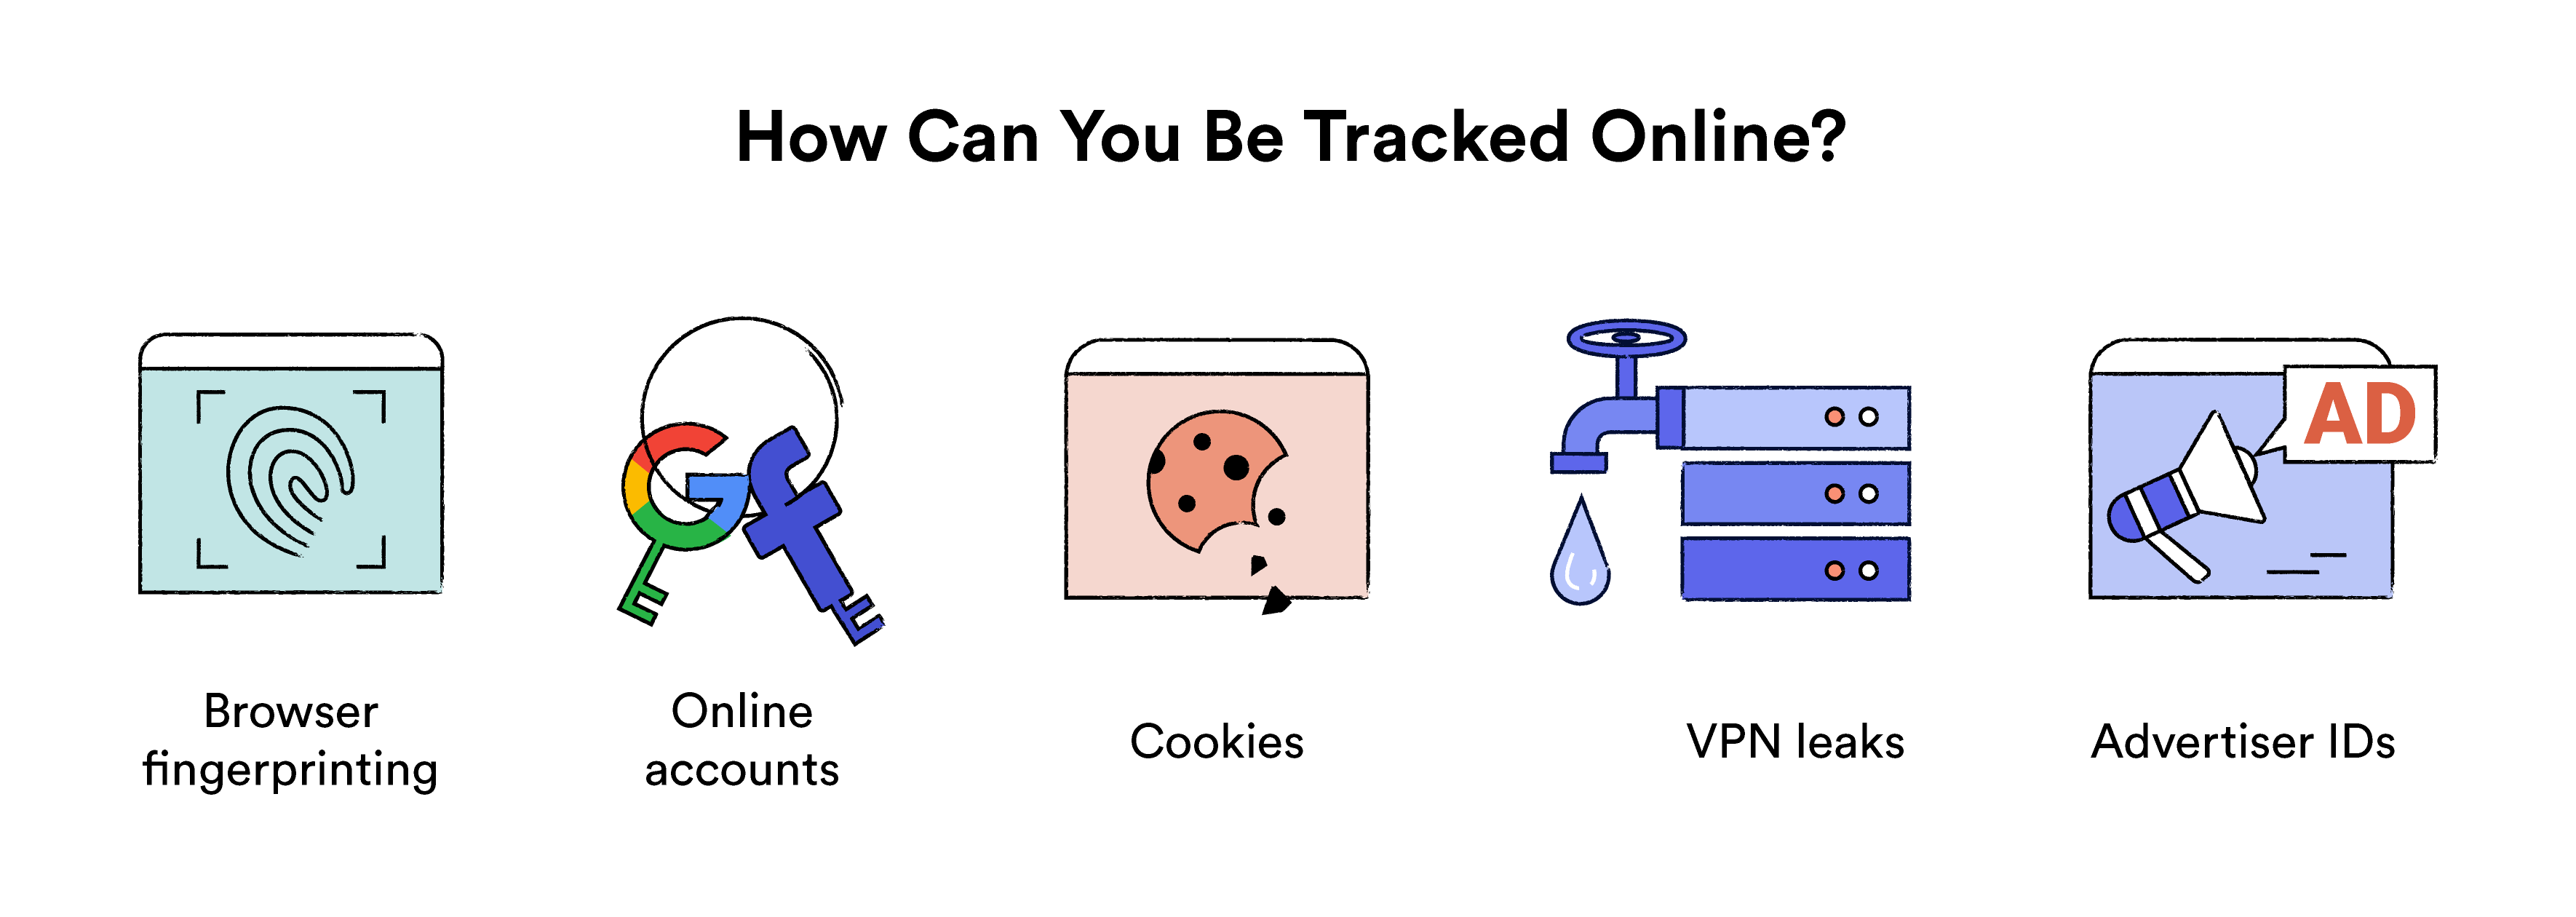 Ilustracja przedstawiająca sposób śledzenia online.